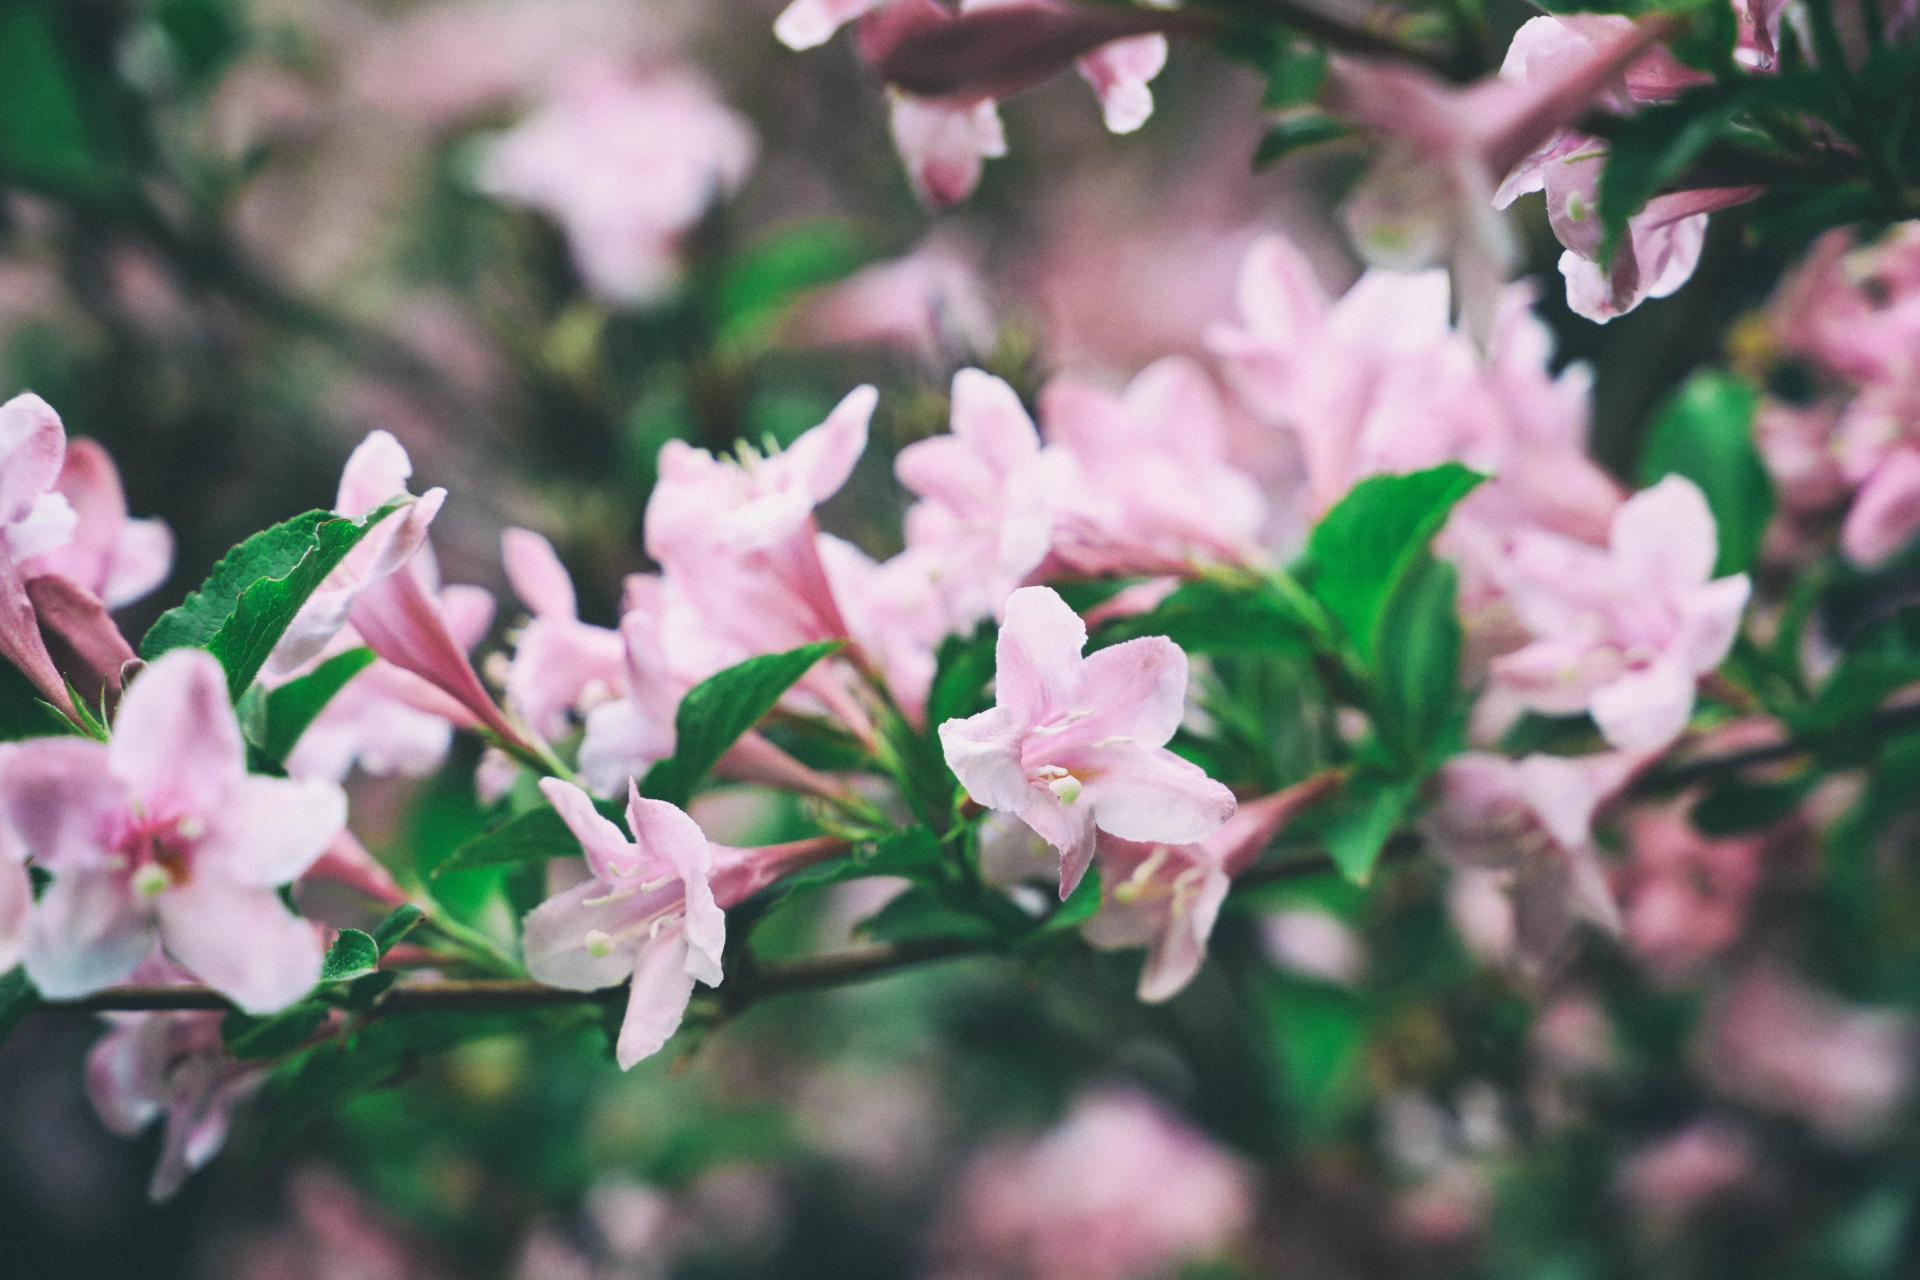 pastel-pink-weigela-spring-flowers-blooming-bush-t-2021-11-22-14-29-36-utc-min.jpg